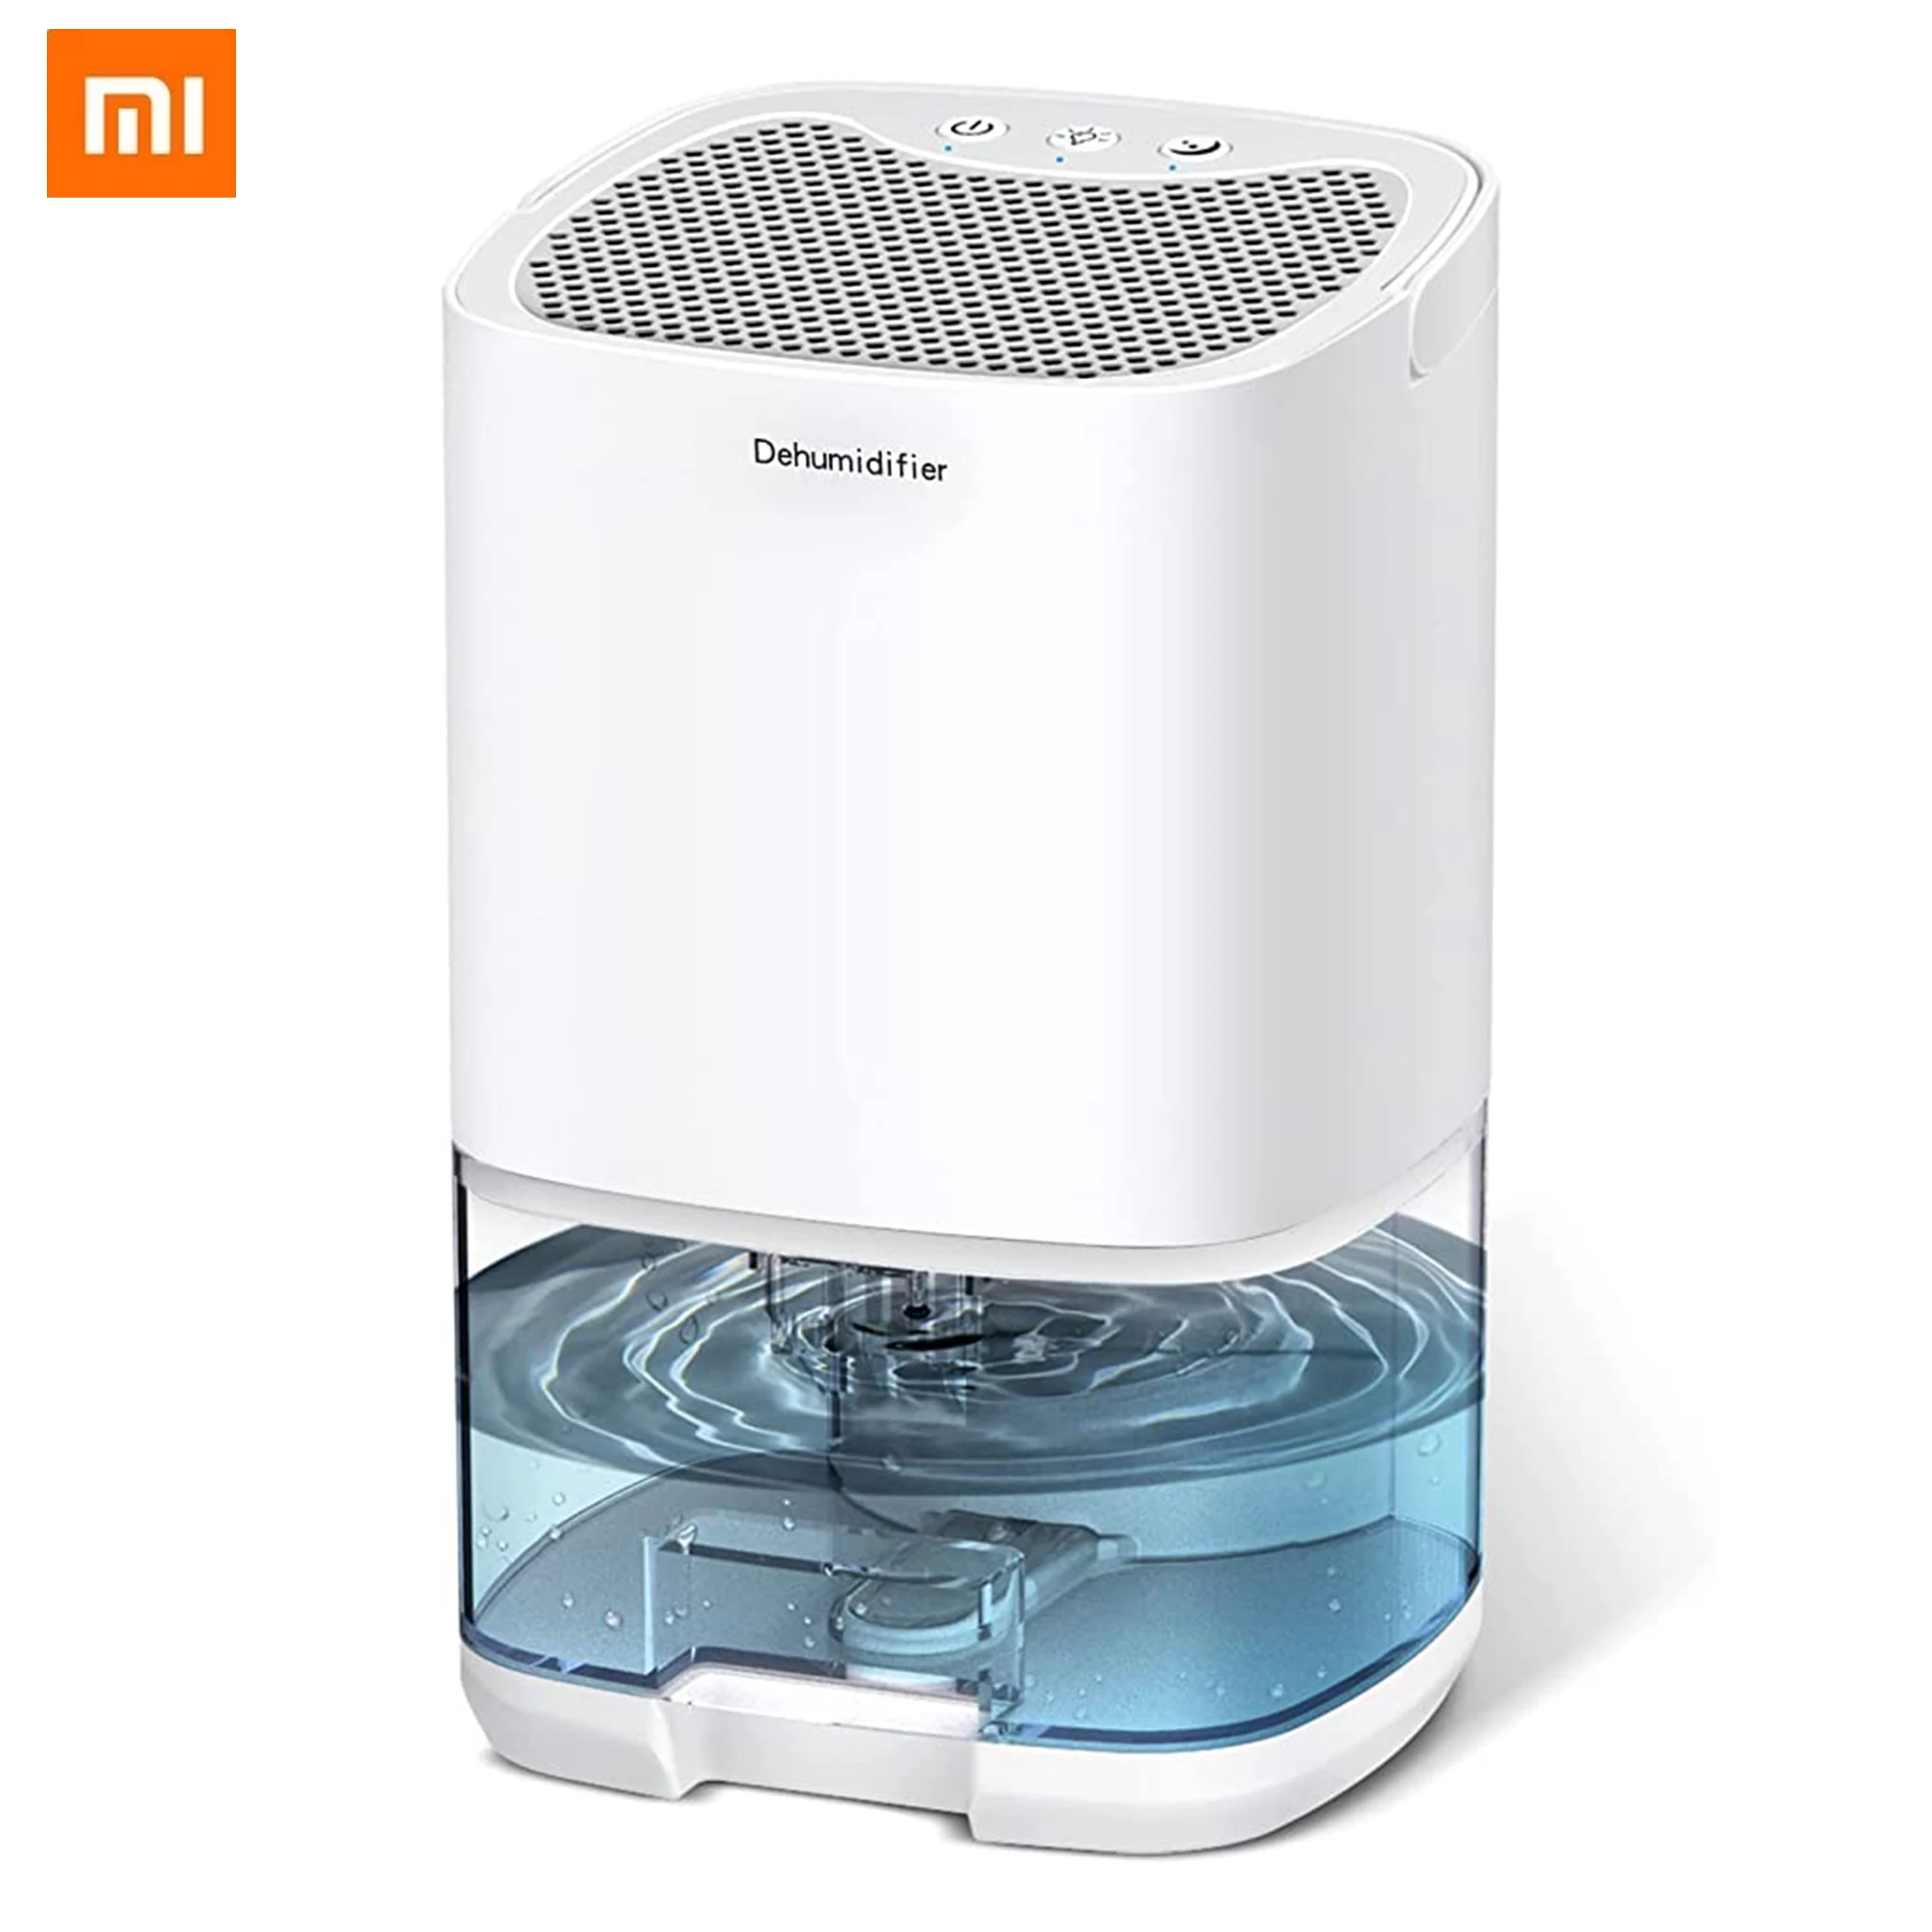 Xiaomi Dehumidifer Small Frigidaire Portable 1000ml Water Tank Dehumidifier For Home Bathroom Basement Deshumidificador